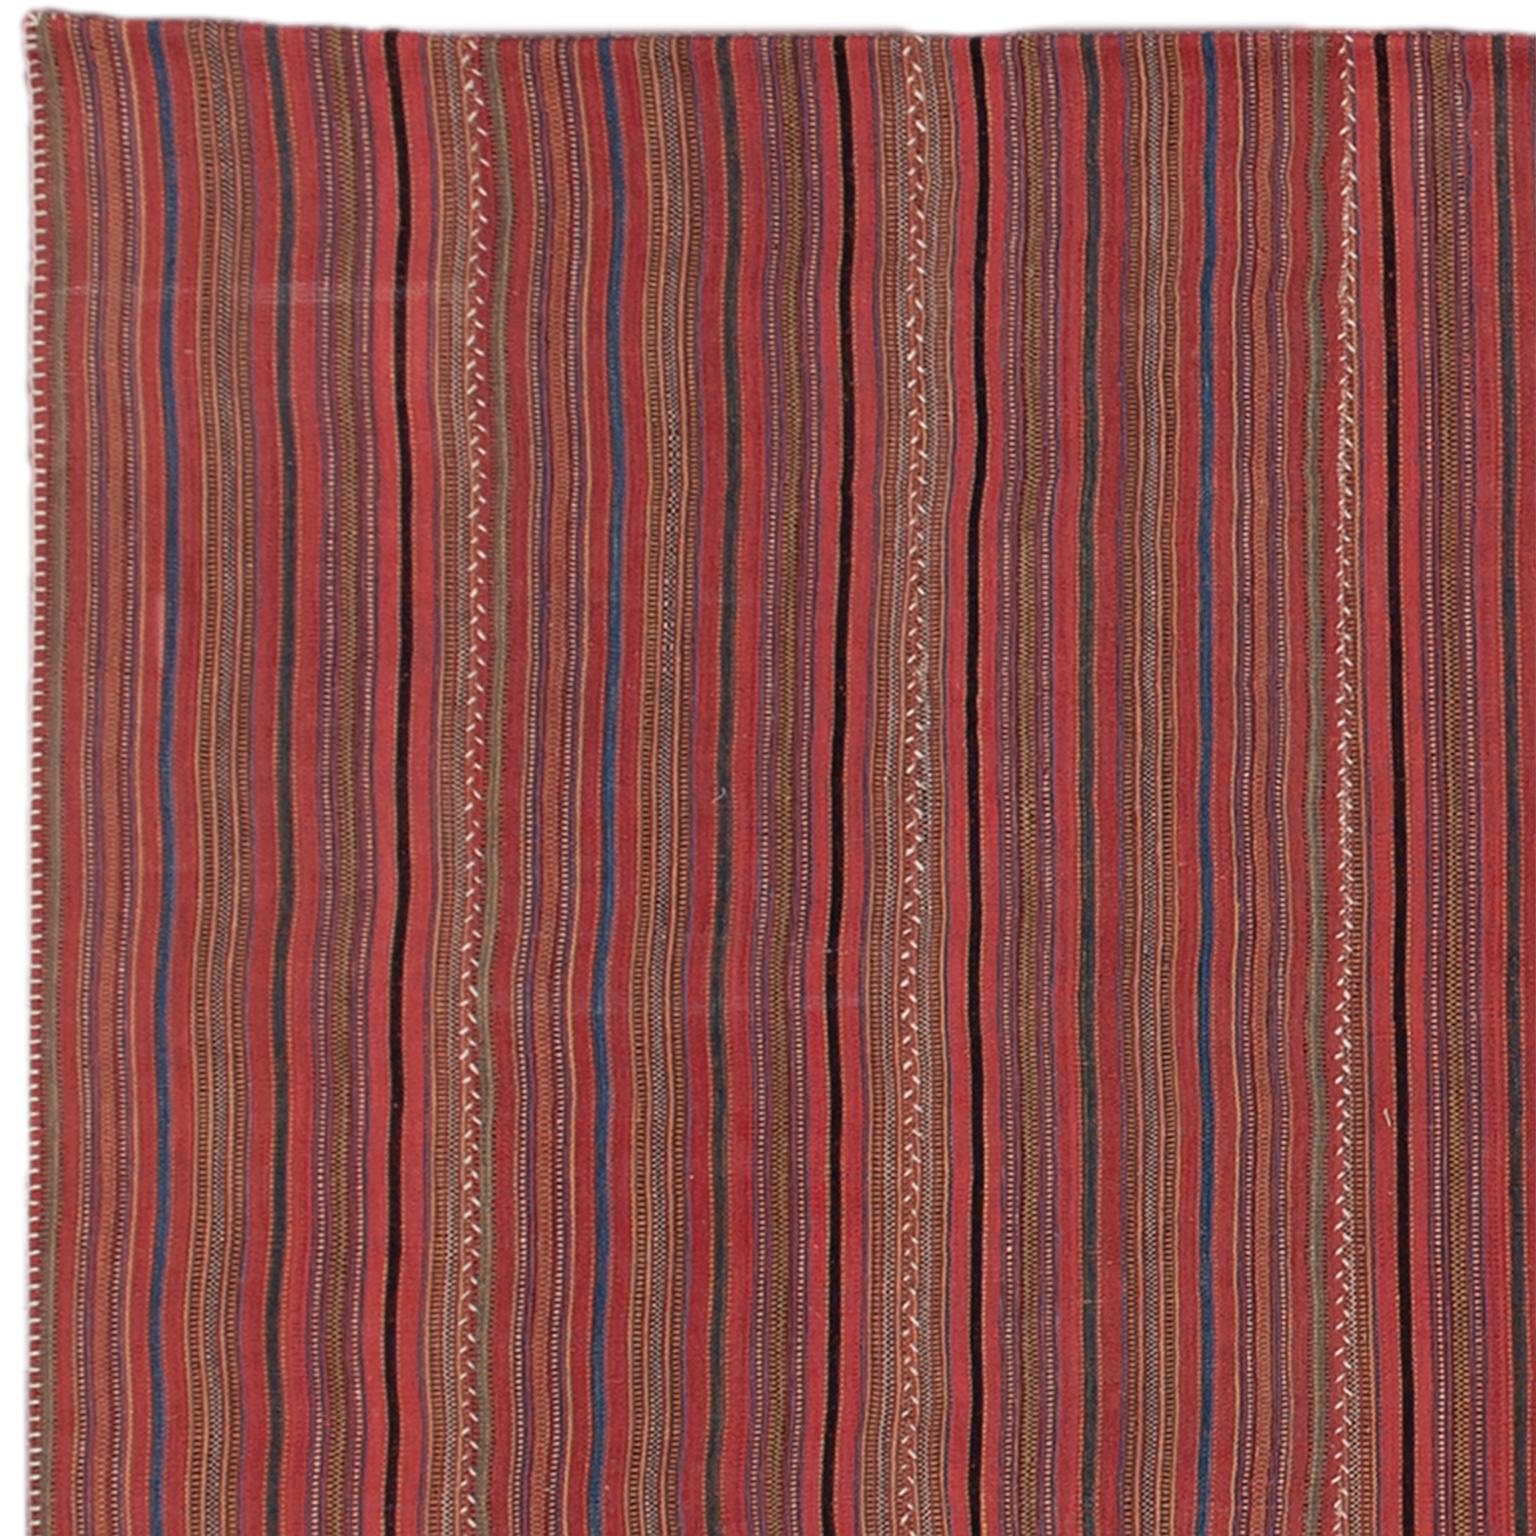 Vintage-Kilim-Komposition aus 10 persischen, rot gestreiften Bahnen (um 1940), die mit einer Naht aus ungefärbtem Leinen zusammengefügt sind.